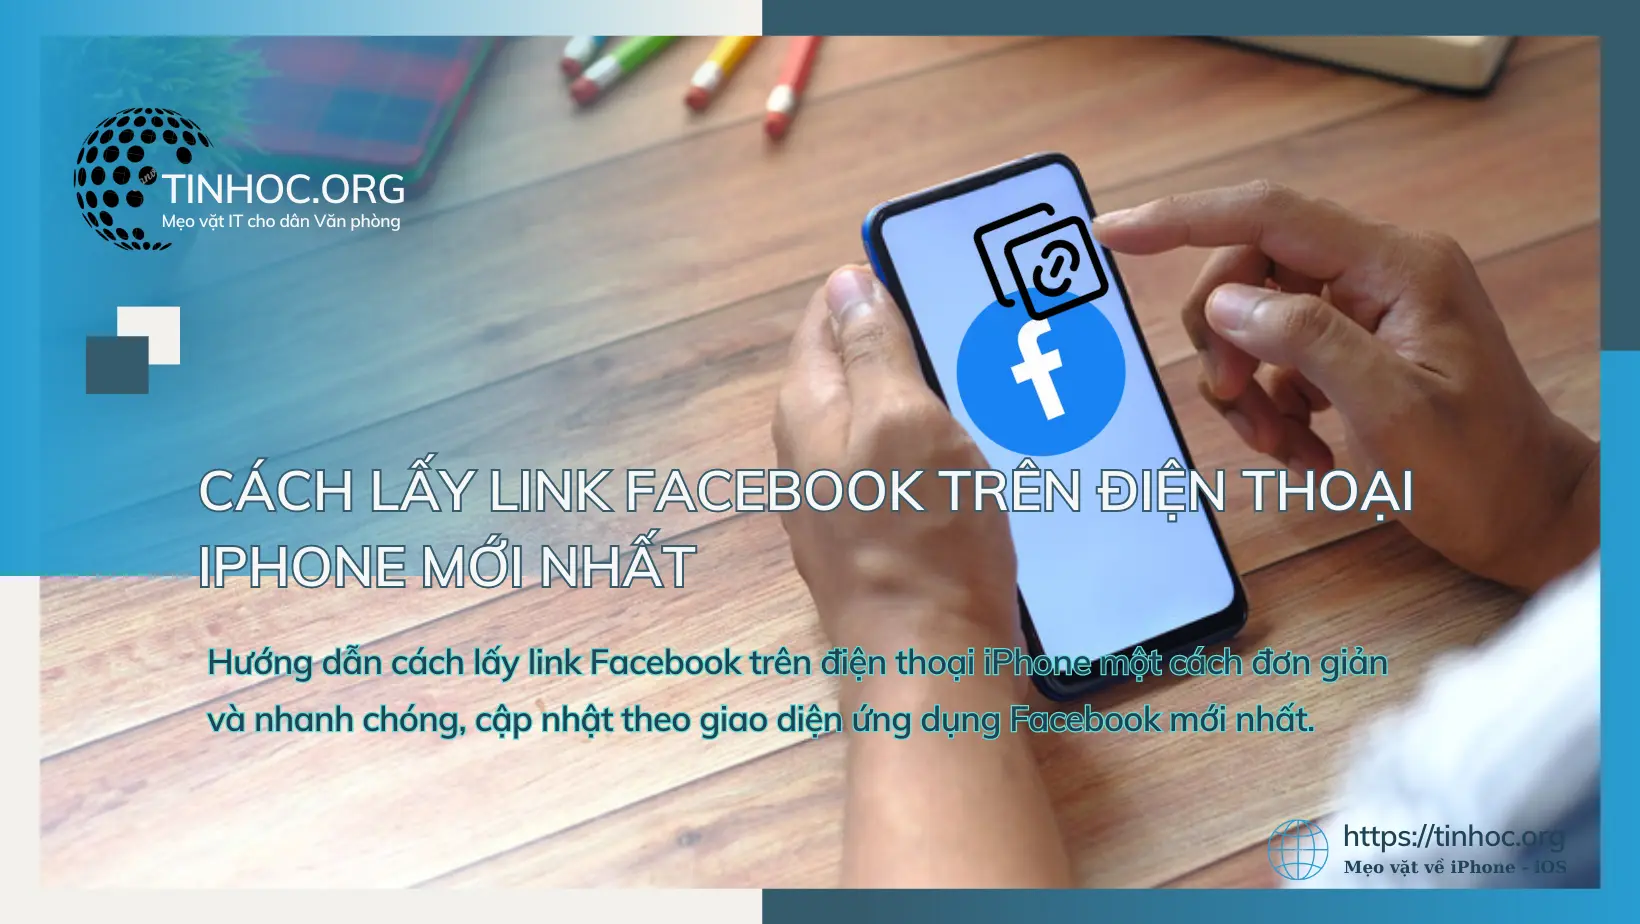 Hướng dẫn cách lấy link Facebook trên điện thoại iPhone một cách đơn giản và nhanh chóng, cập nhật theo giao diện ứng dụng Facebook mới nhất.